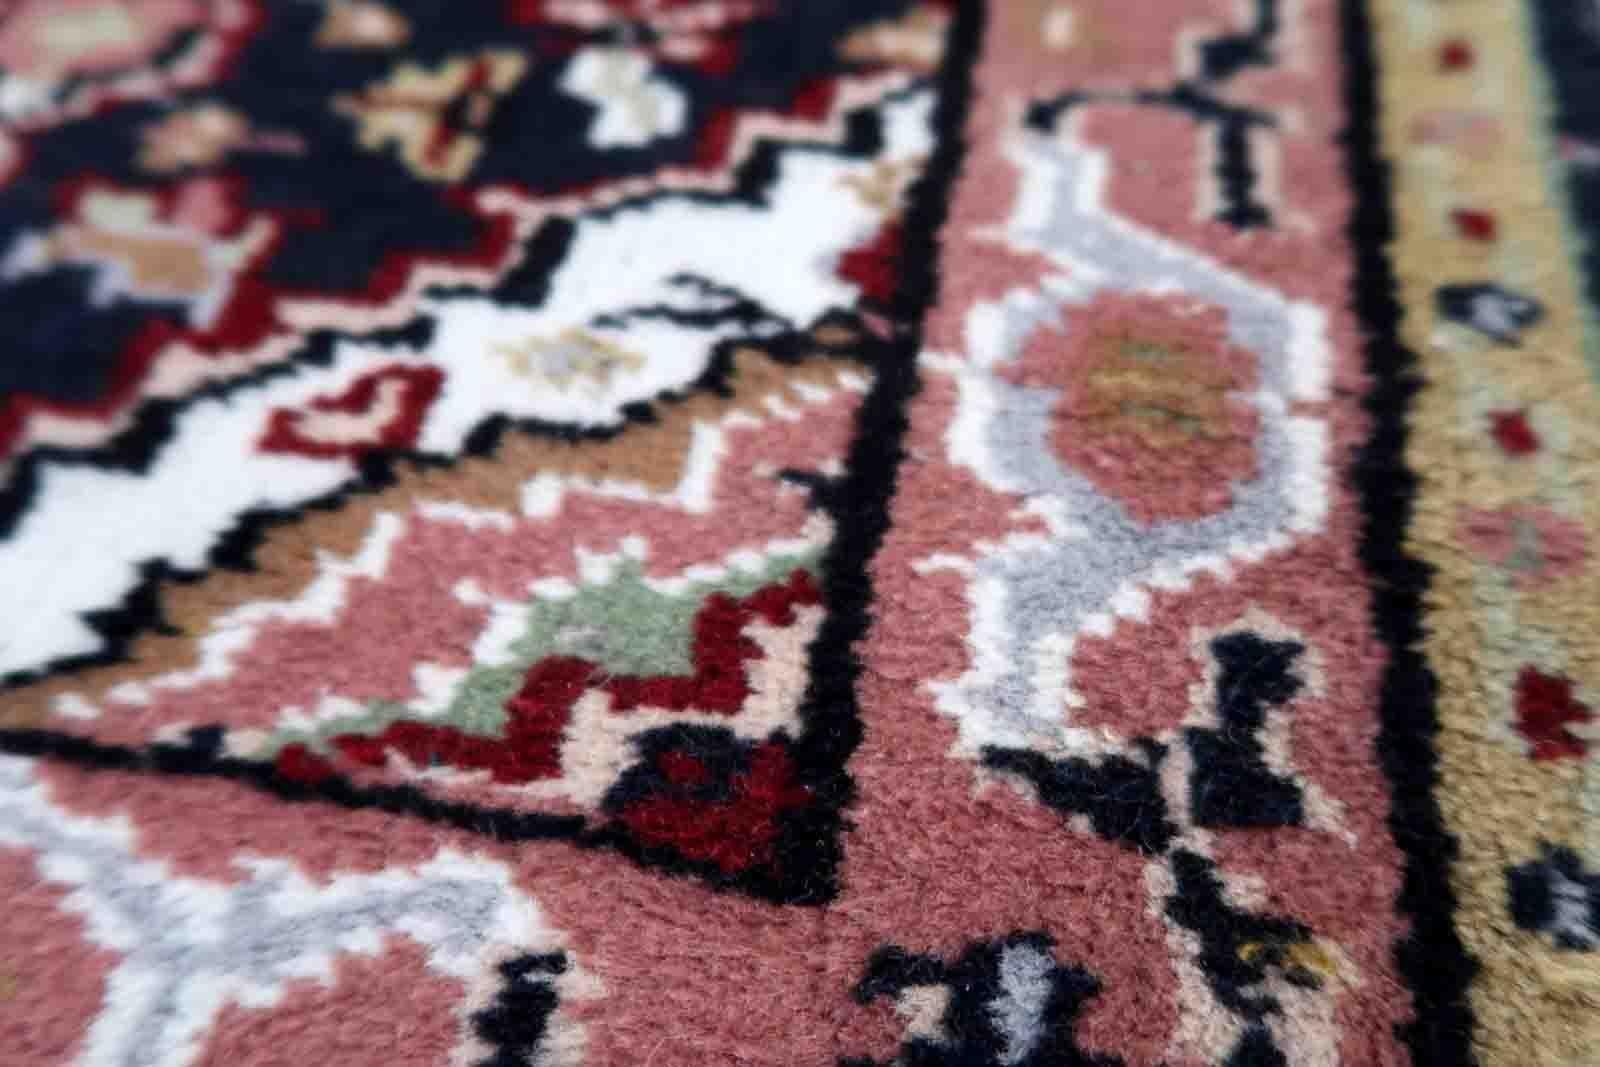 Tapis Indo-Mahal vintage en laine, fait à la main. Le tapis est de la fin du 20ème siècle en état original, il a quelques poils bas.

?-condition : original, quelques poils bas,

-circa : 1970,

-Taille : 2' x 2.8' (61cm x 88cm),

-Matériau